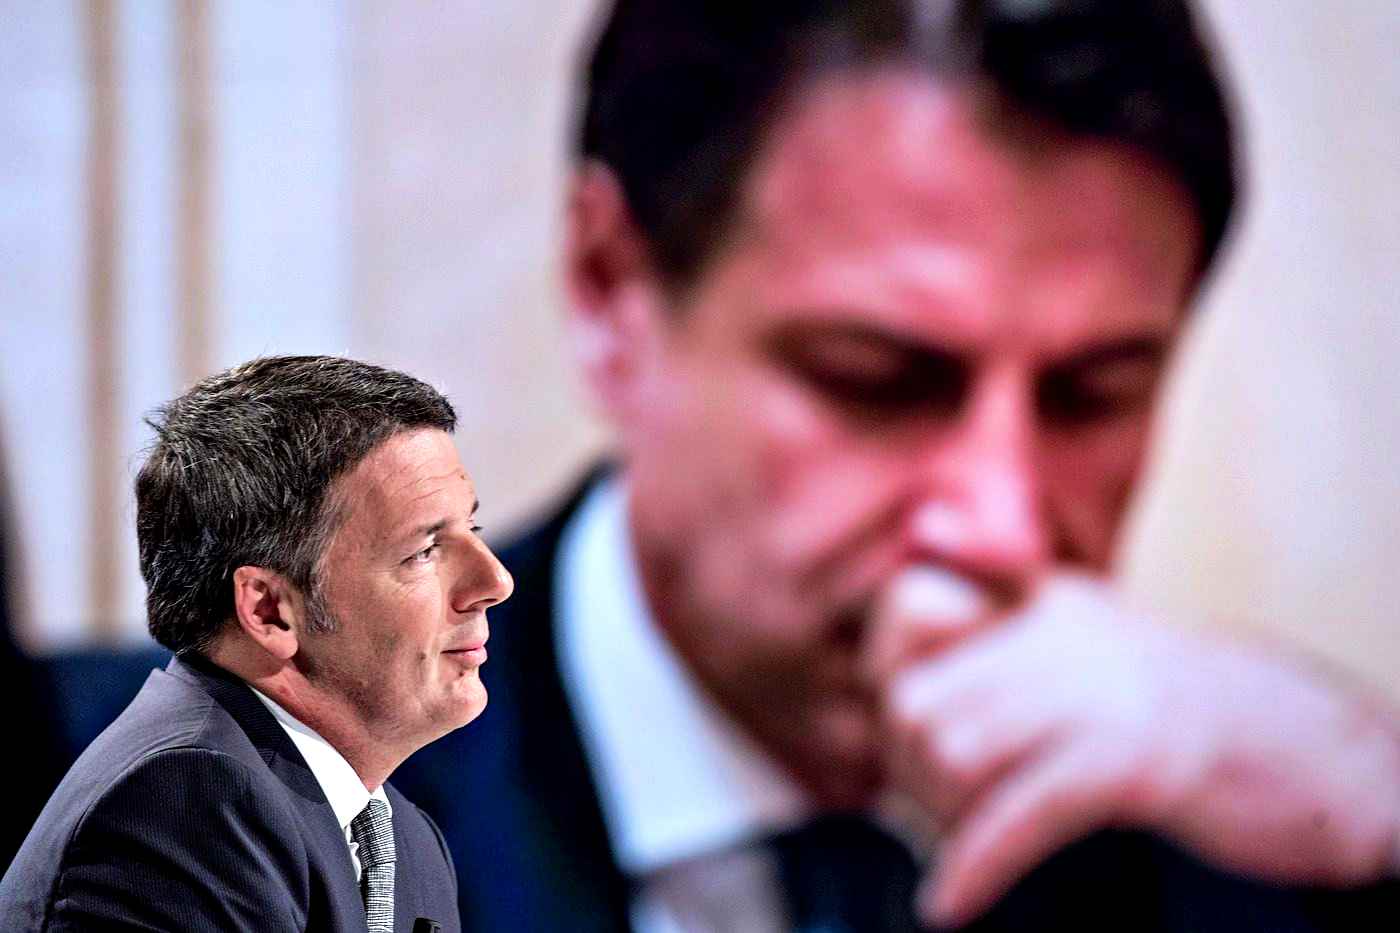 Renzi torna a bombardare premier e M5s. Alleati avvertono: se esce lo sostituiamo